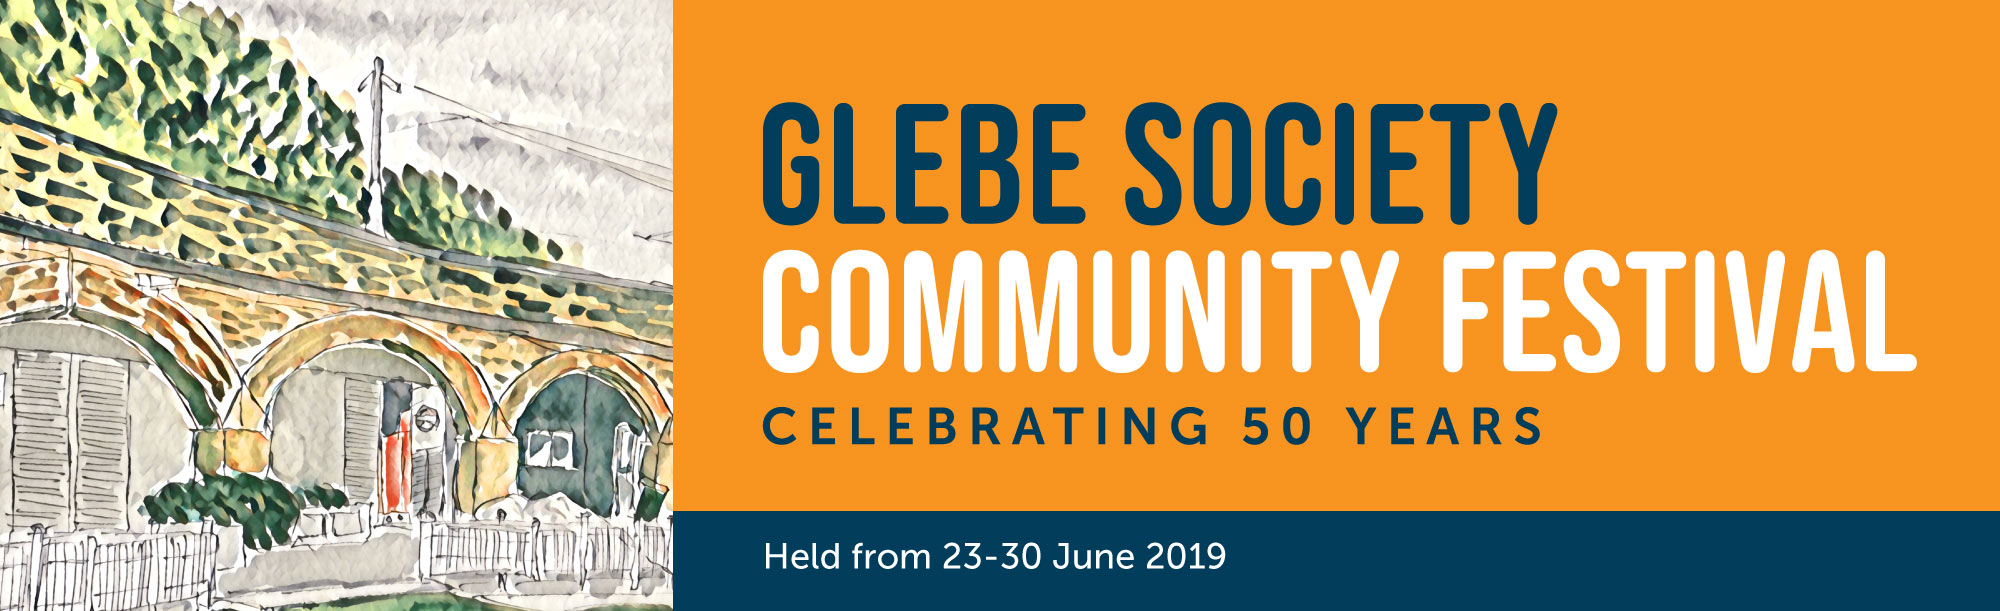 The Glebe Society Community Festival 2019